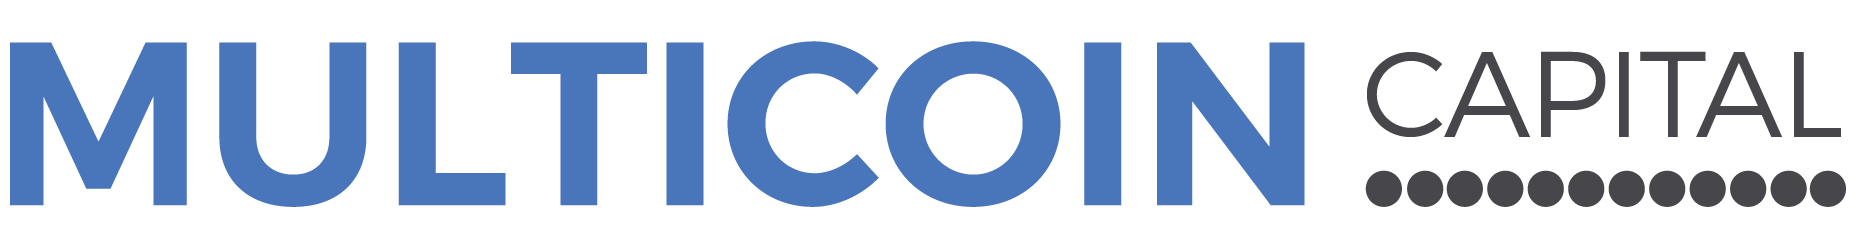 Multicoin Capital Logo